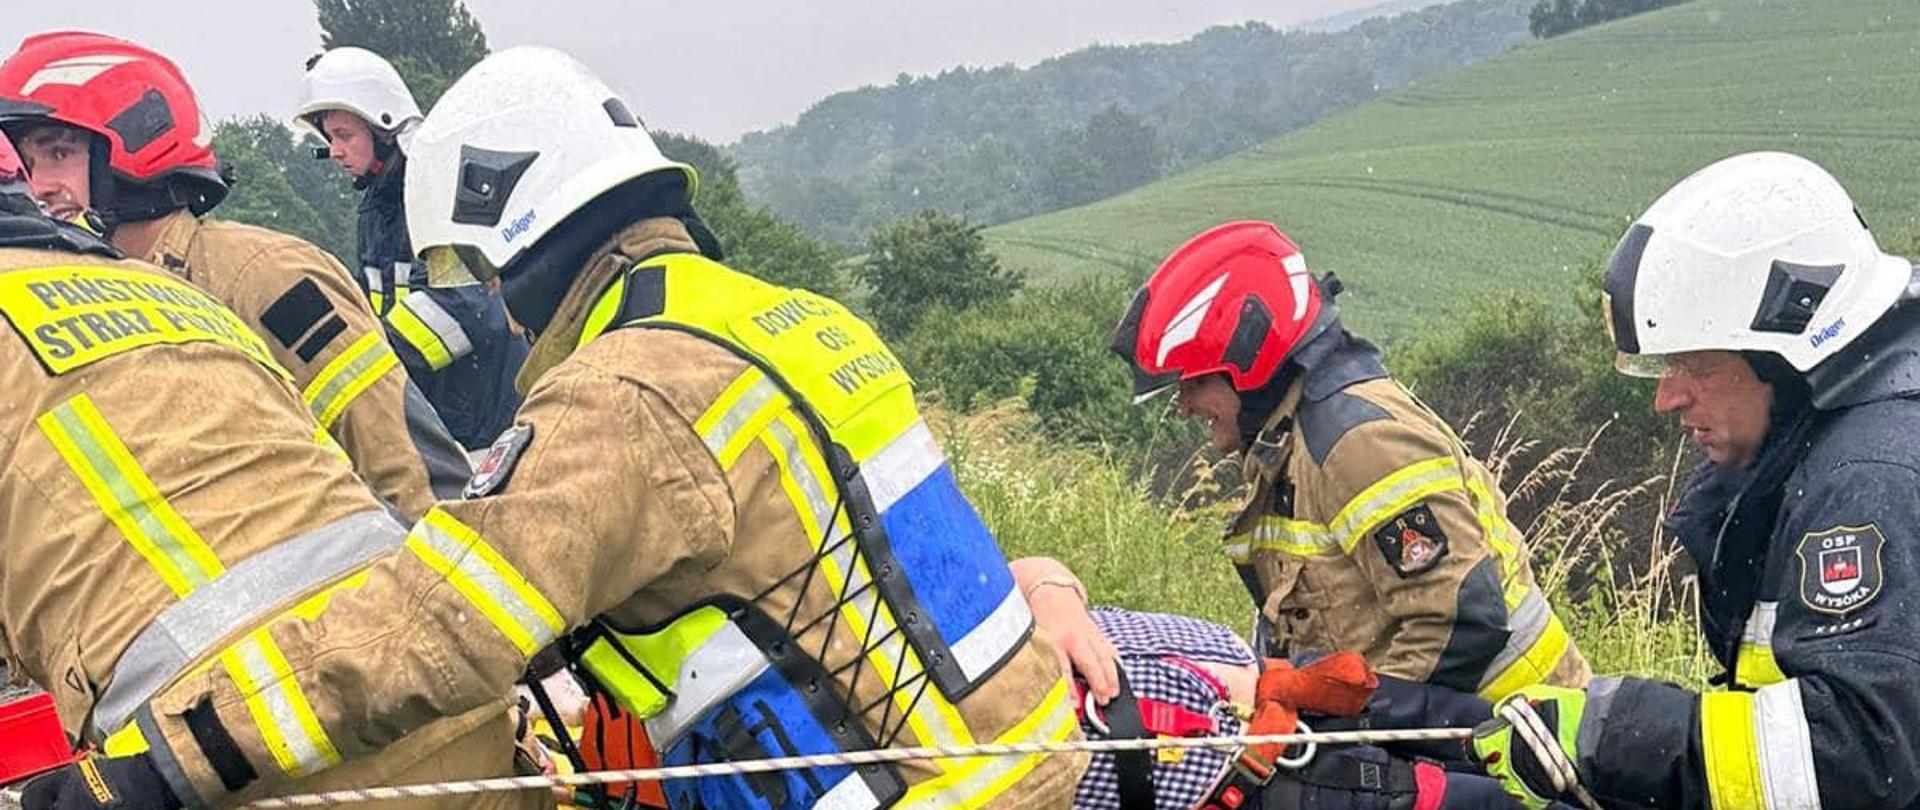 Na zdjęciu znajdują się strażacy wchodzących przy pomocy lin po skarpie, którzy transportują poszkodowanego na noszach. W tle widać pola